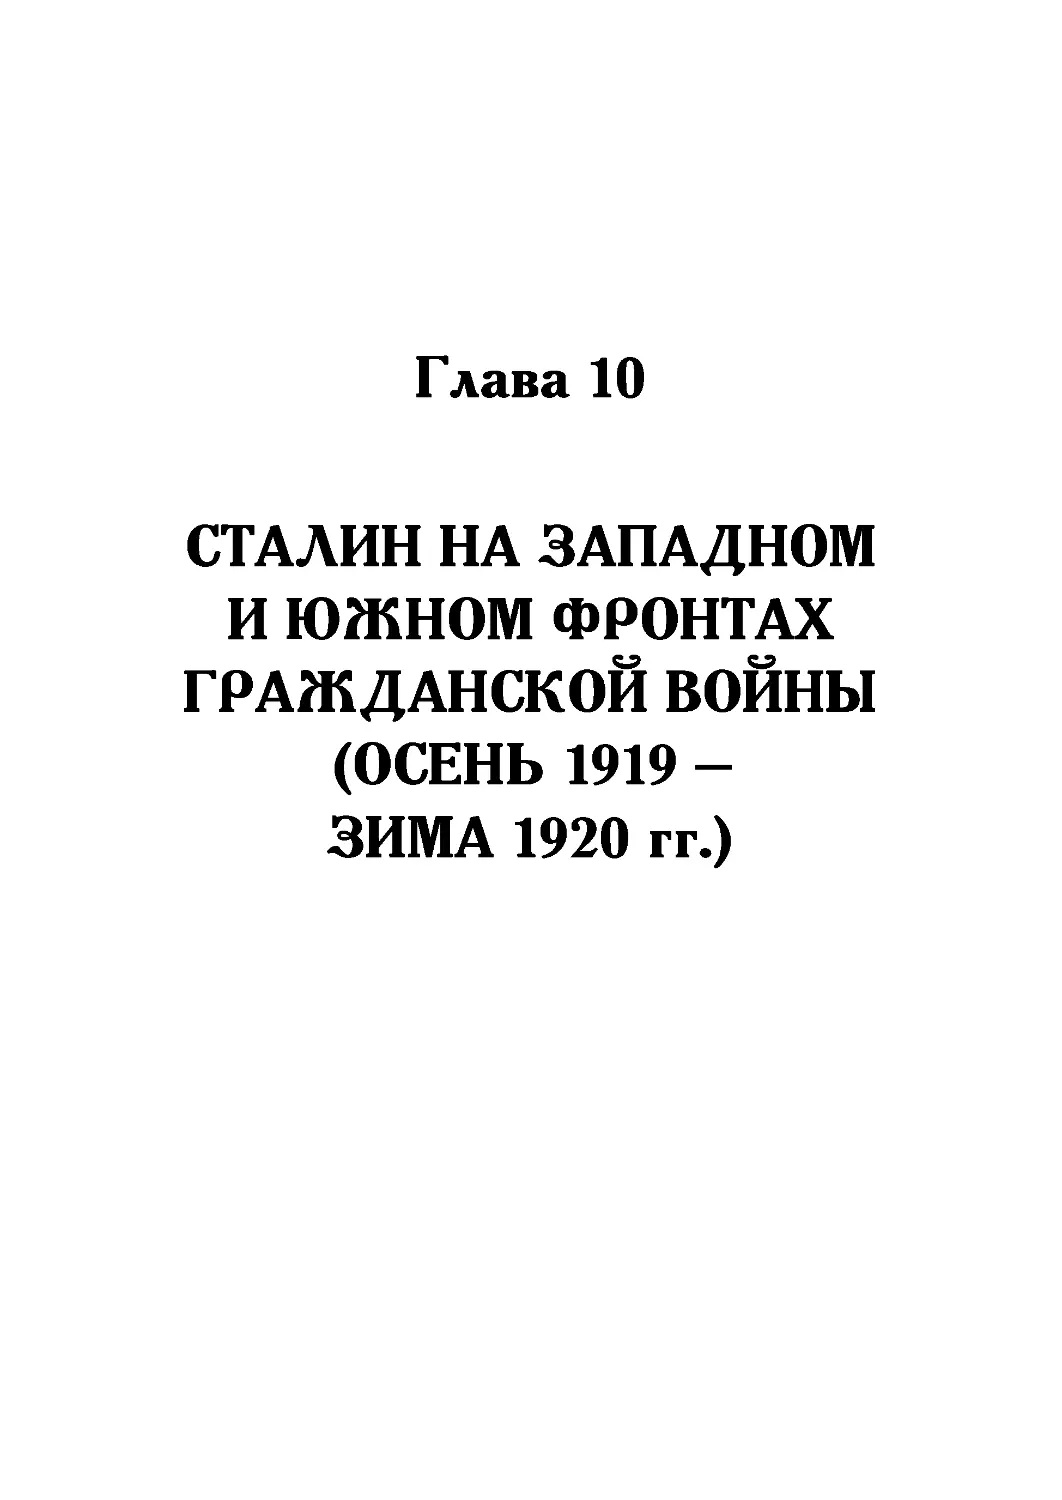 Глава 10. Сталин на Западном и Южном фронтах Гражданской войны (осень 1919 года —